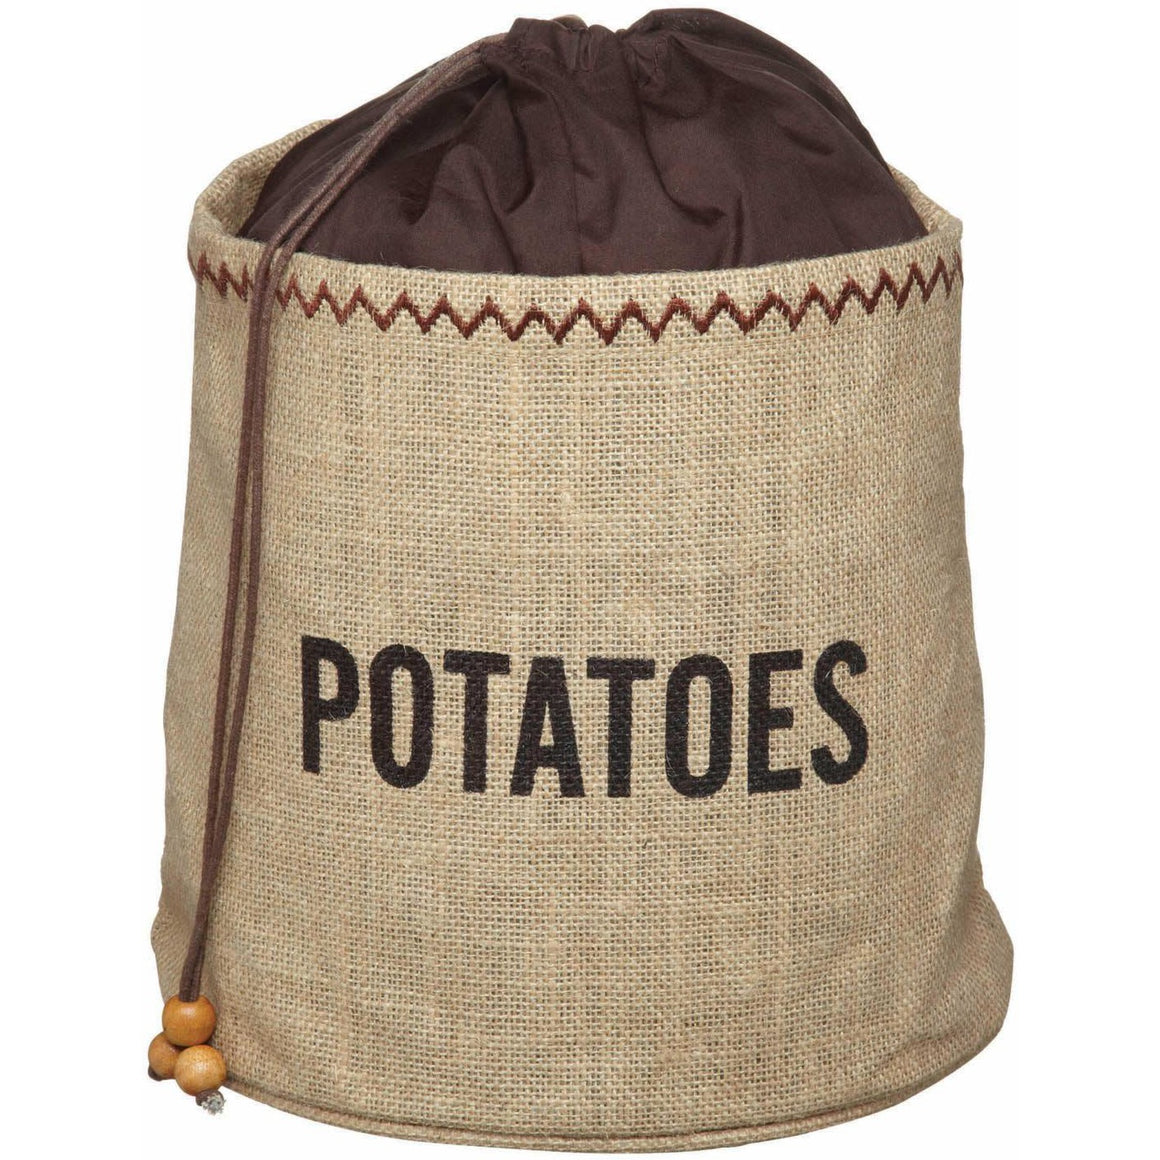 KitchenCraft Potato Sack